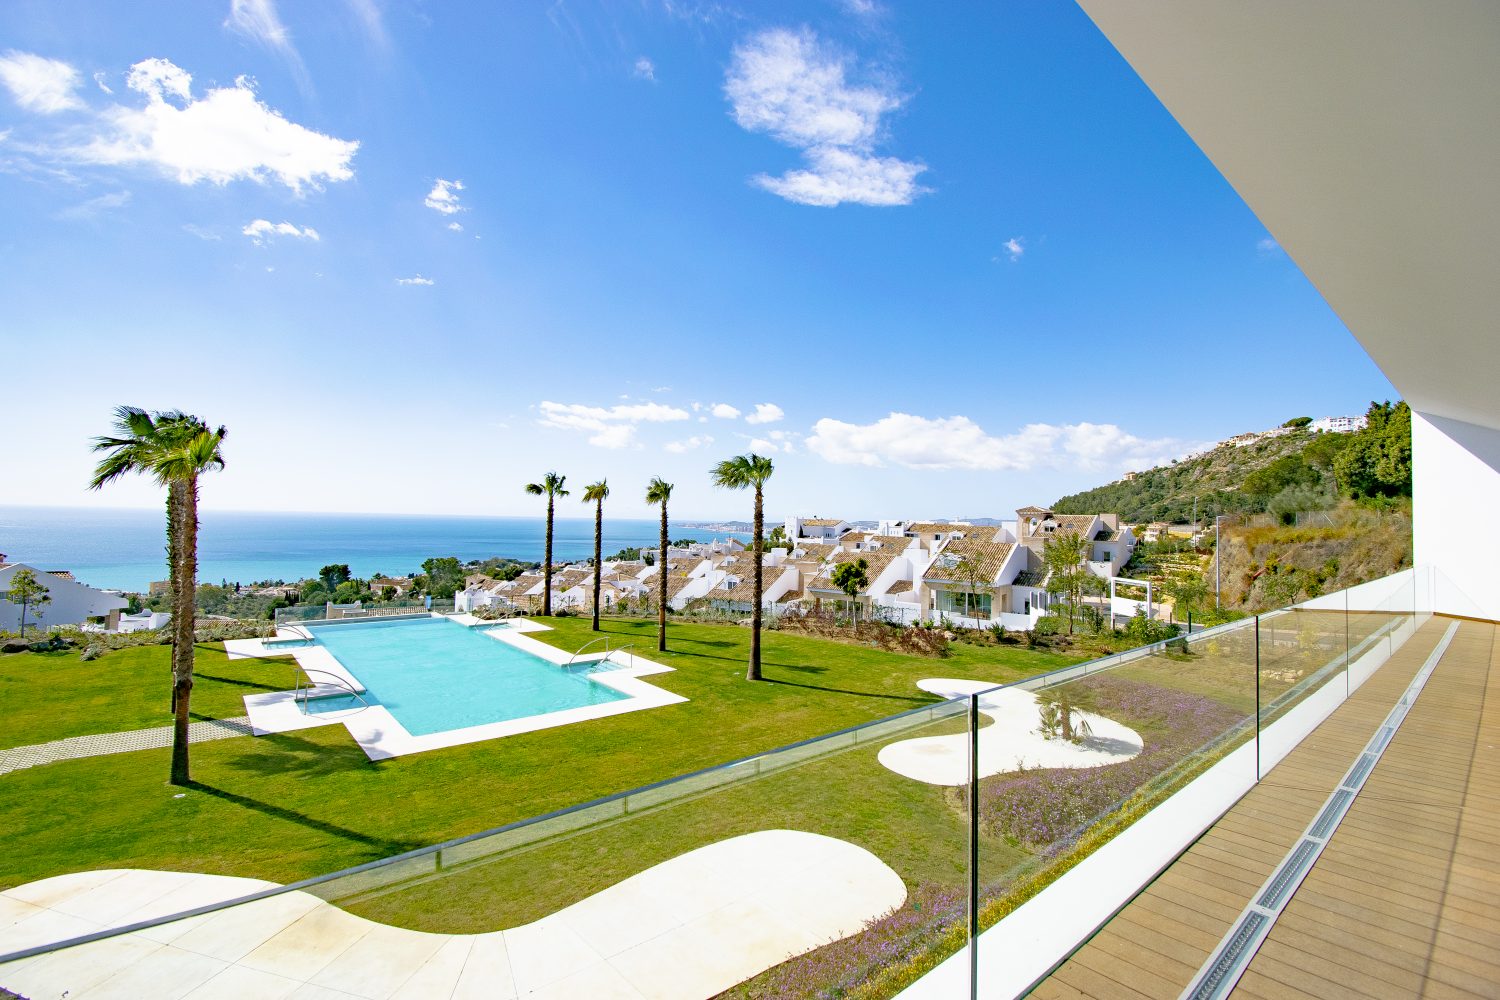 Všechny vily mají nádherný panoramatický výhled na Středozemní moře.